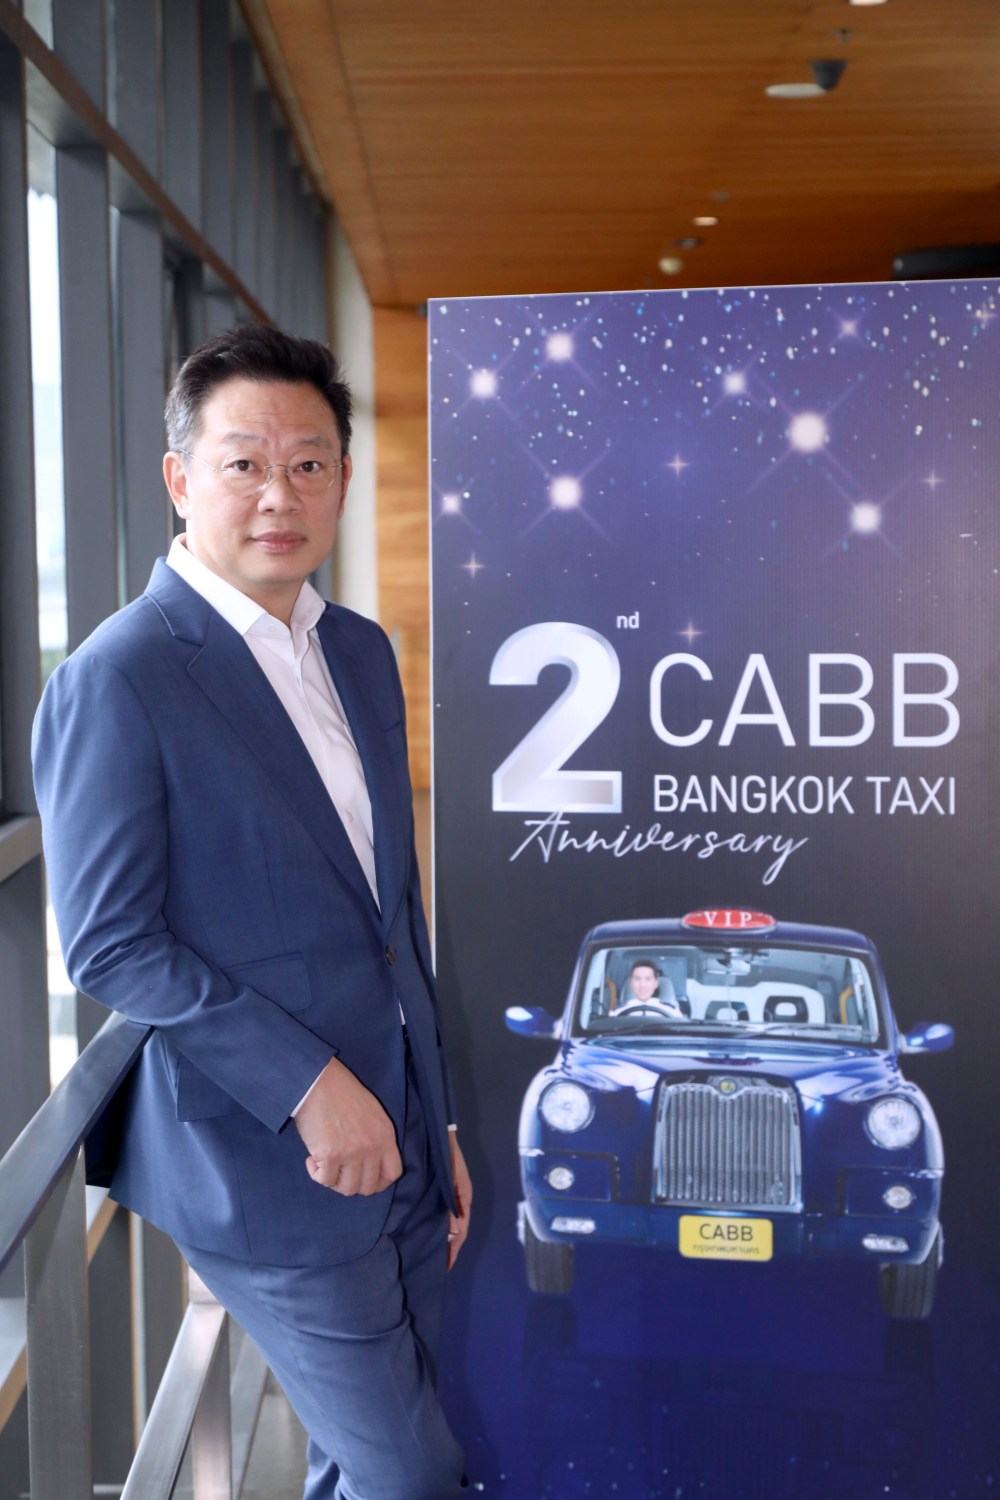 CABB Bangkok Taxi,n CABB Plus, แท็กซี่วีไอพี, สไตล์ลอนดอน, แท็กซี่ส่วนตัวเพื่อคนกรุงเทพฯ, แท็กซี่ป้ายดำ, แท็กซี่ส่วนบุคคล, คนขับแค็บบ์, ผู้เช่าขับ, แท็กซี่ไร้คนขับ